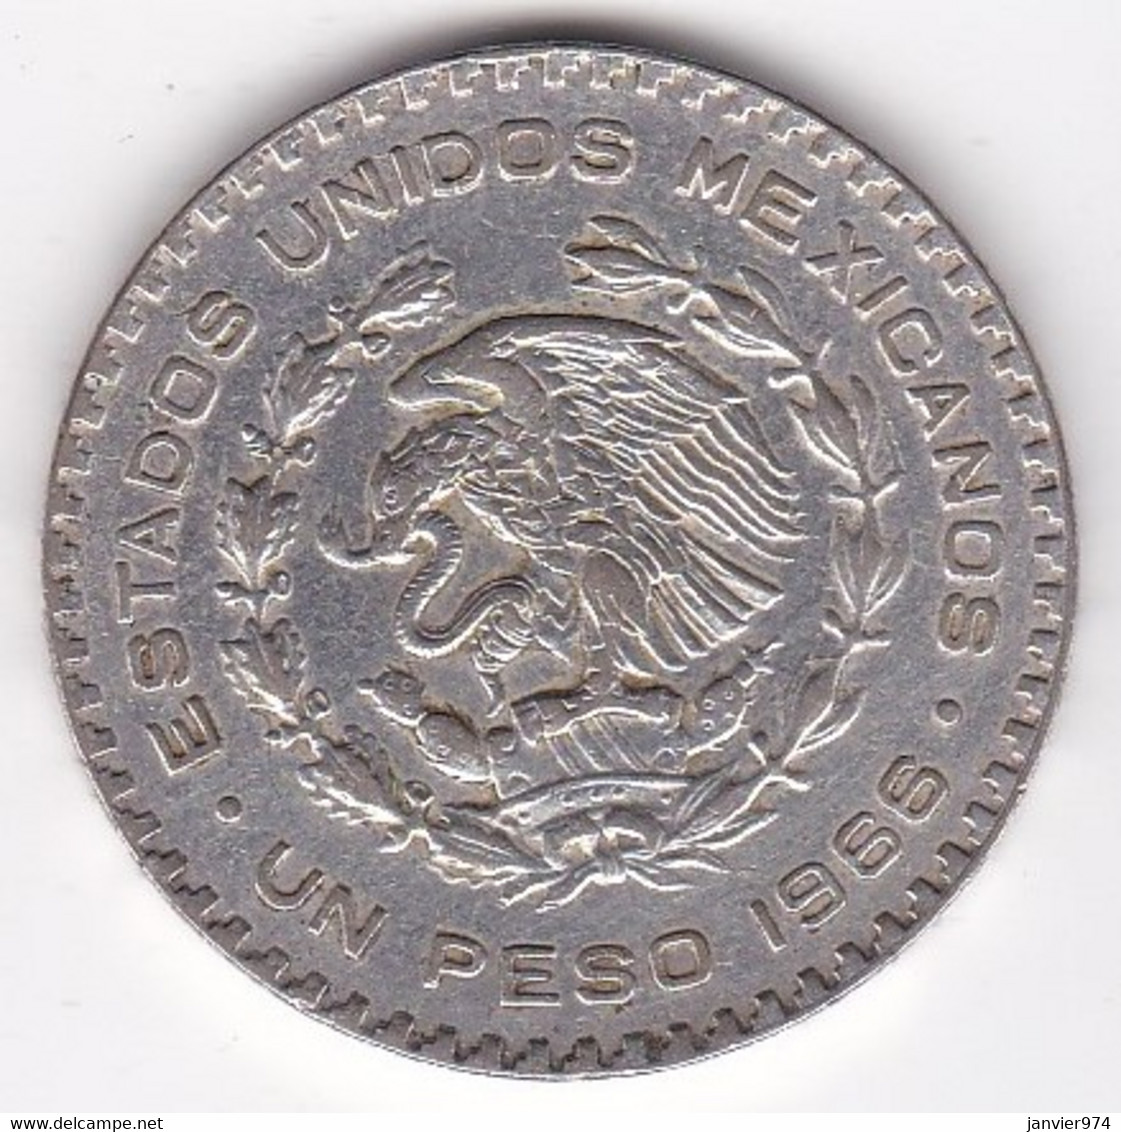 Mexique 1 Peso 1966 , José María Morelos Y Pavón, En Argent, KM# 459 - Mexico